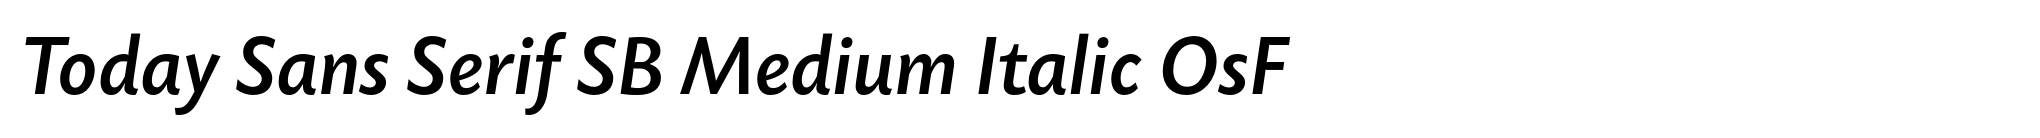 Today Sans Serif SB Medium Italic OsF image